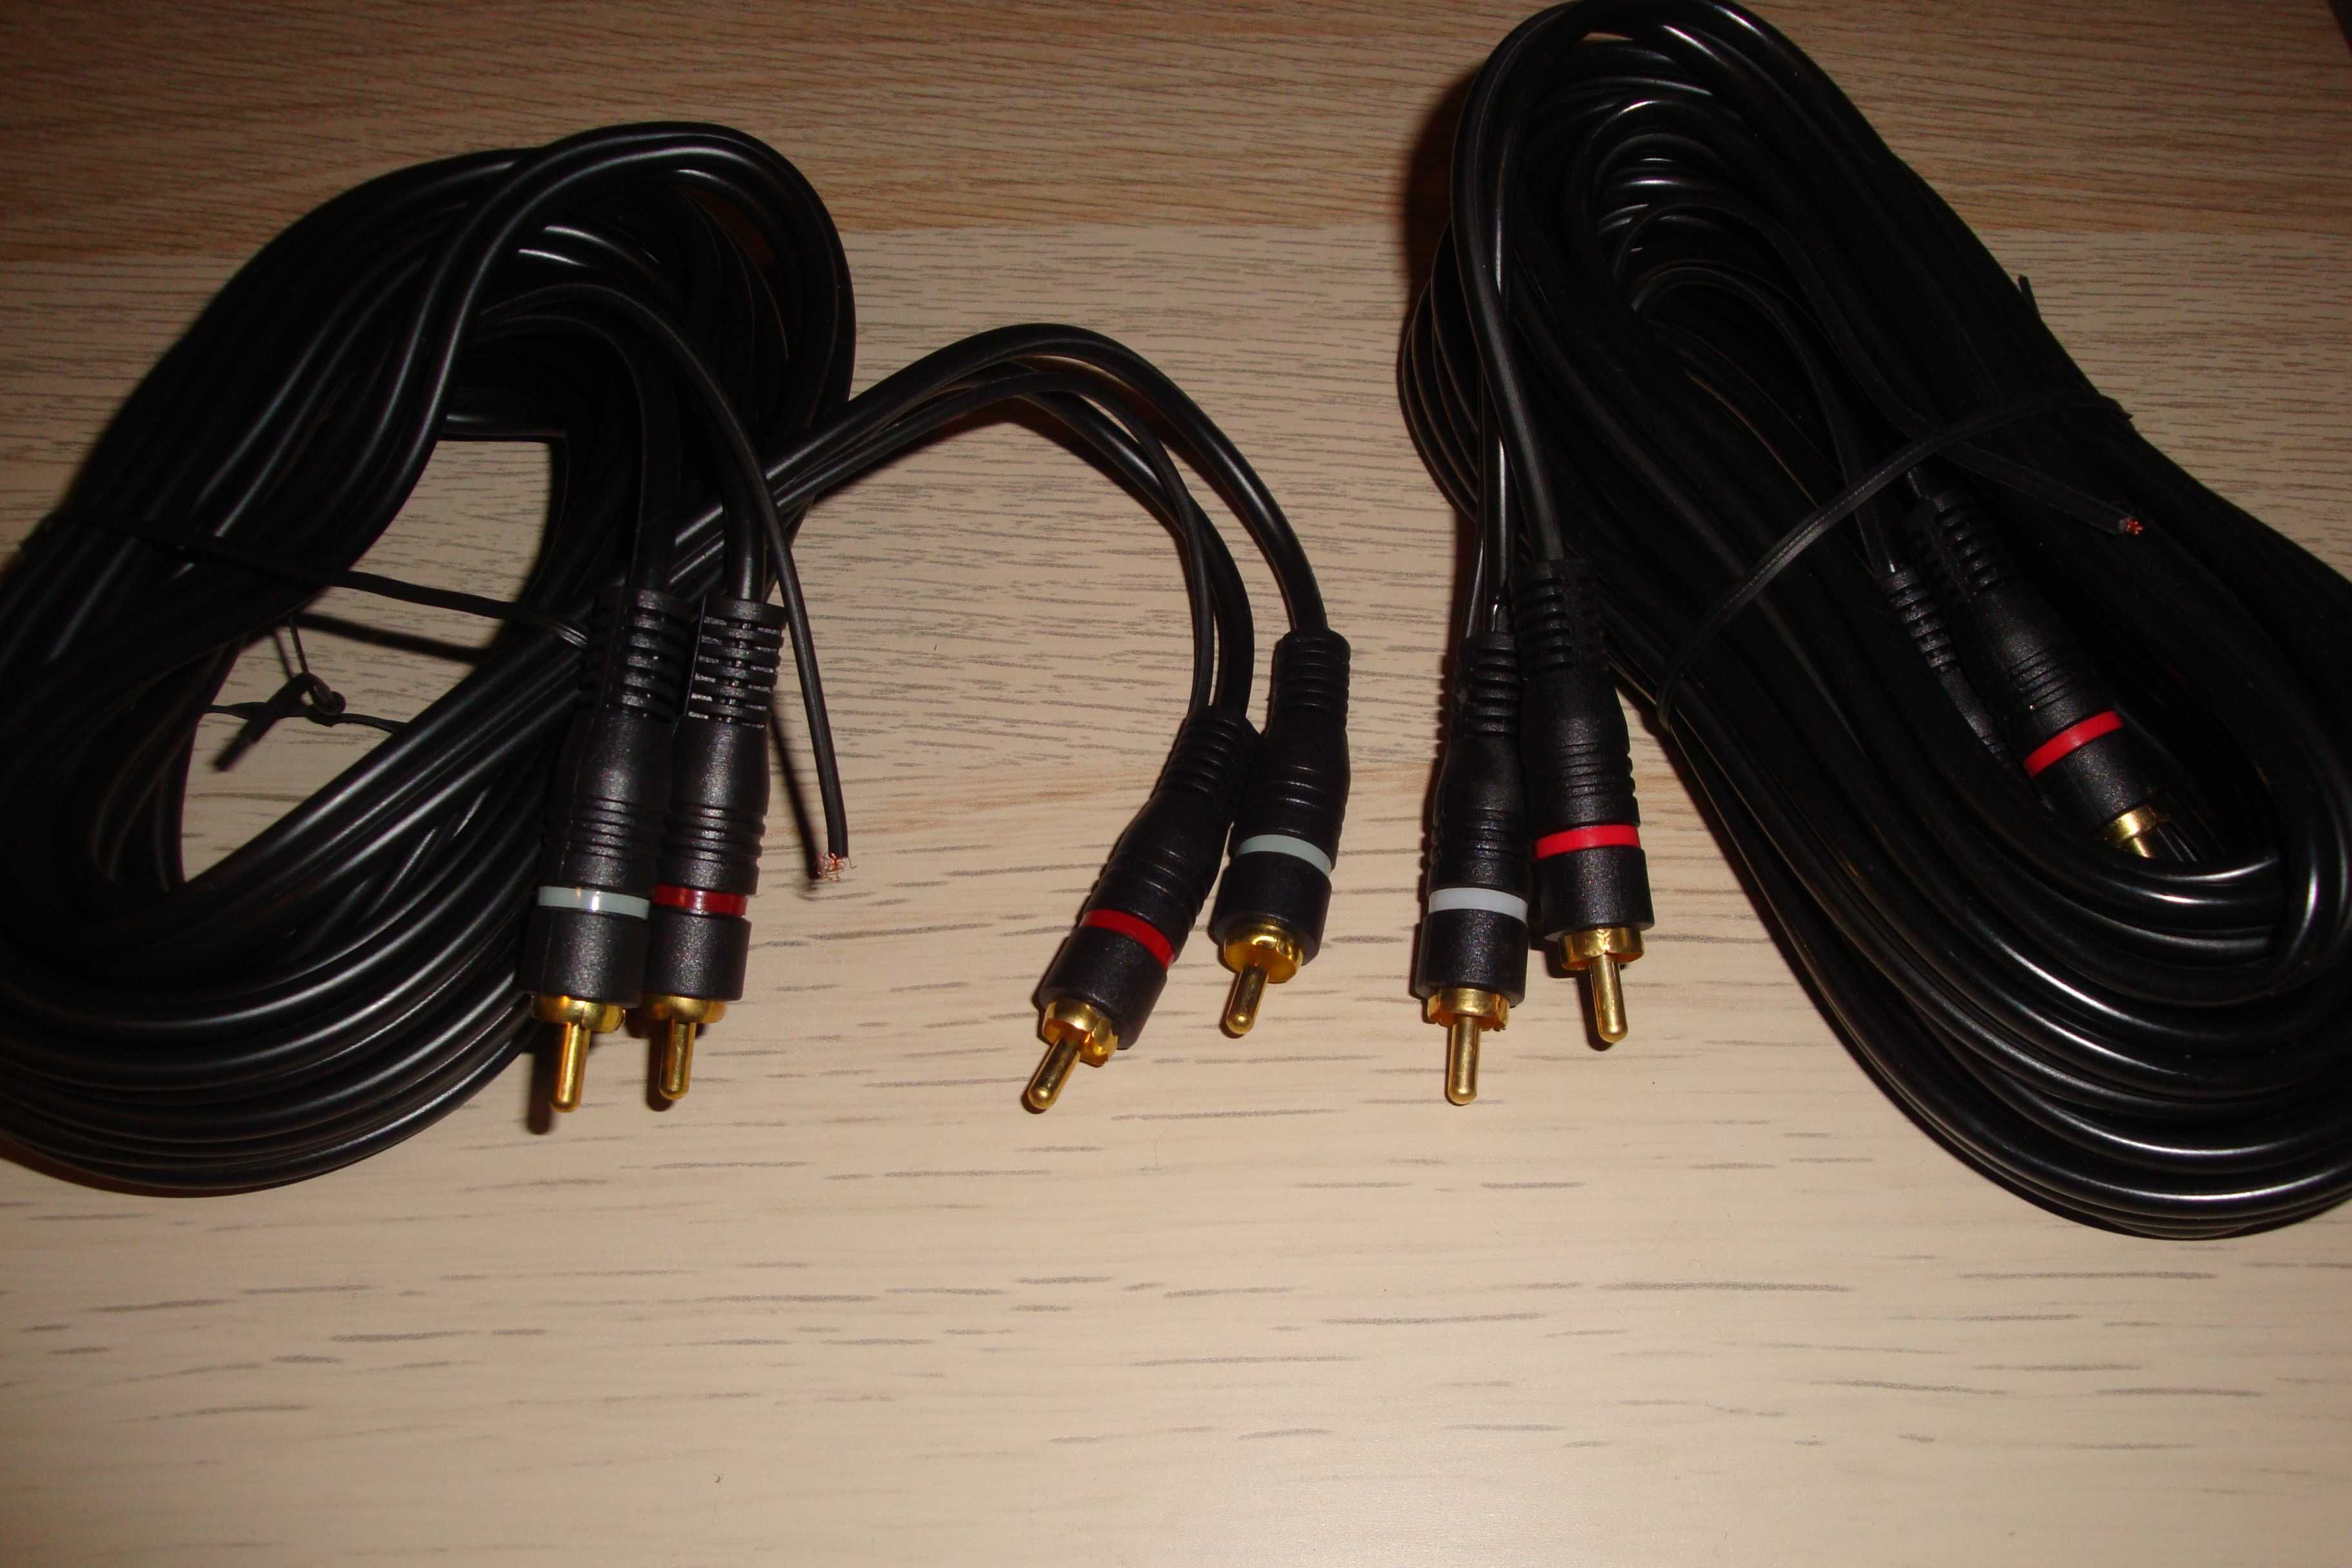 cablu audio stereo 2 rca la 2rca 5m fir remote auto transport inclus